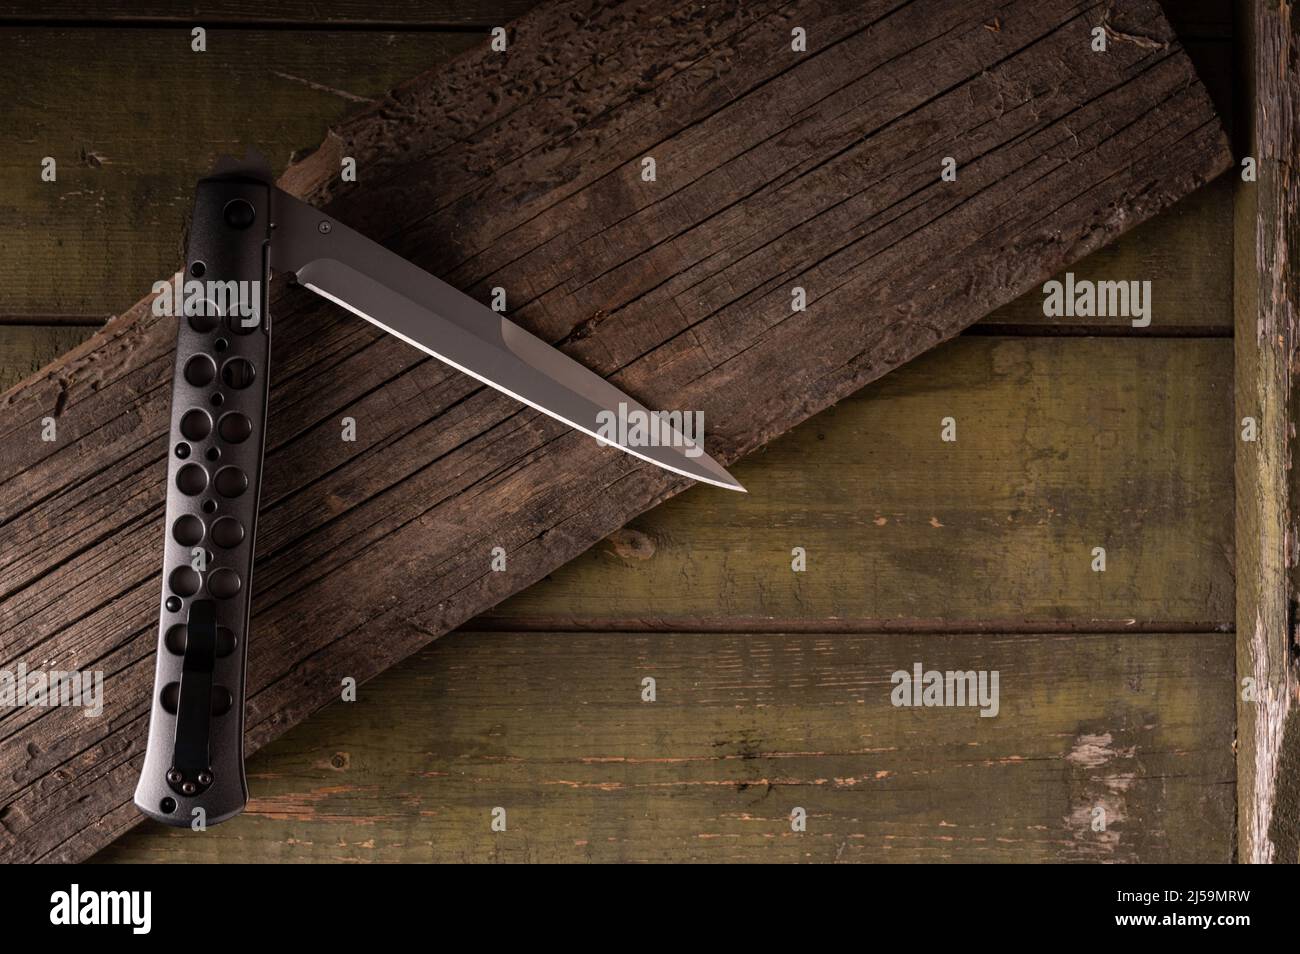 Leichtes Messer Stockfotos und -bilder Kaufen - Alamy